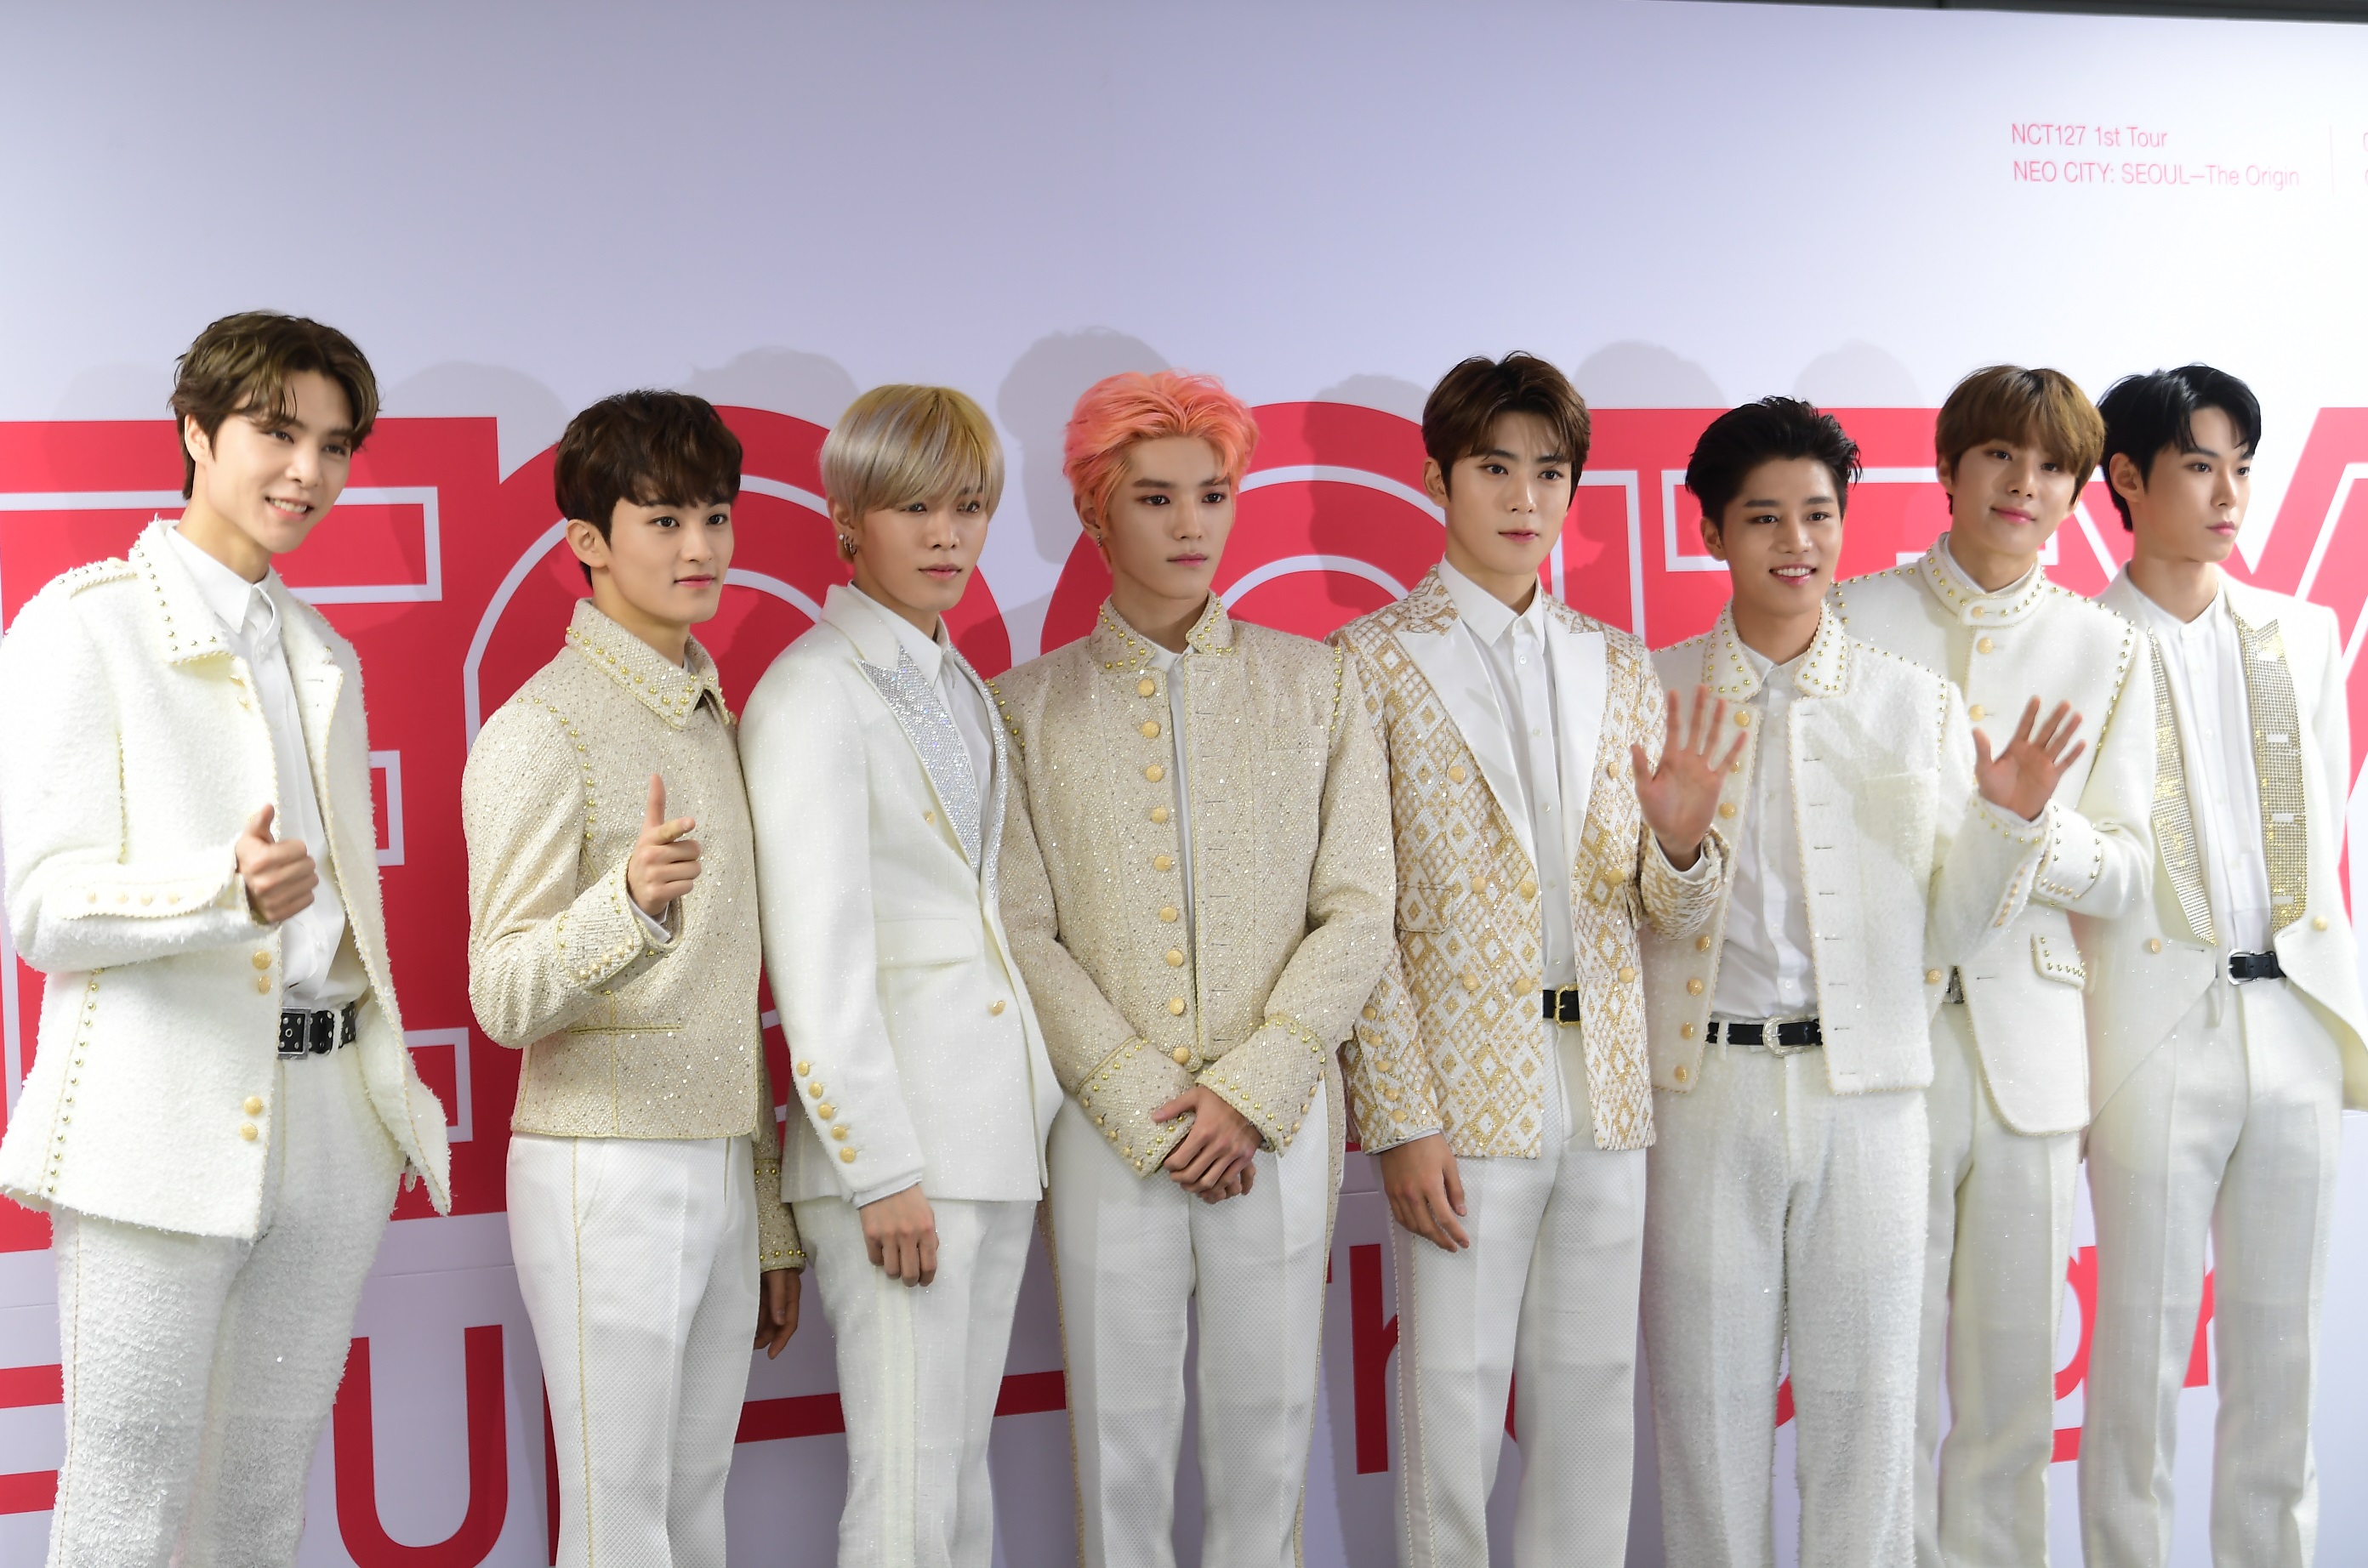 NCT 127이 27일 서울 올림픽공원 체조경기장에서 열린 첫 단독콘서트 기자회견에서 포즈를 취하고 있다.